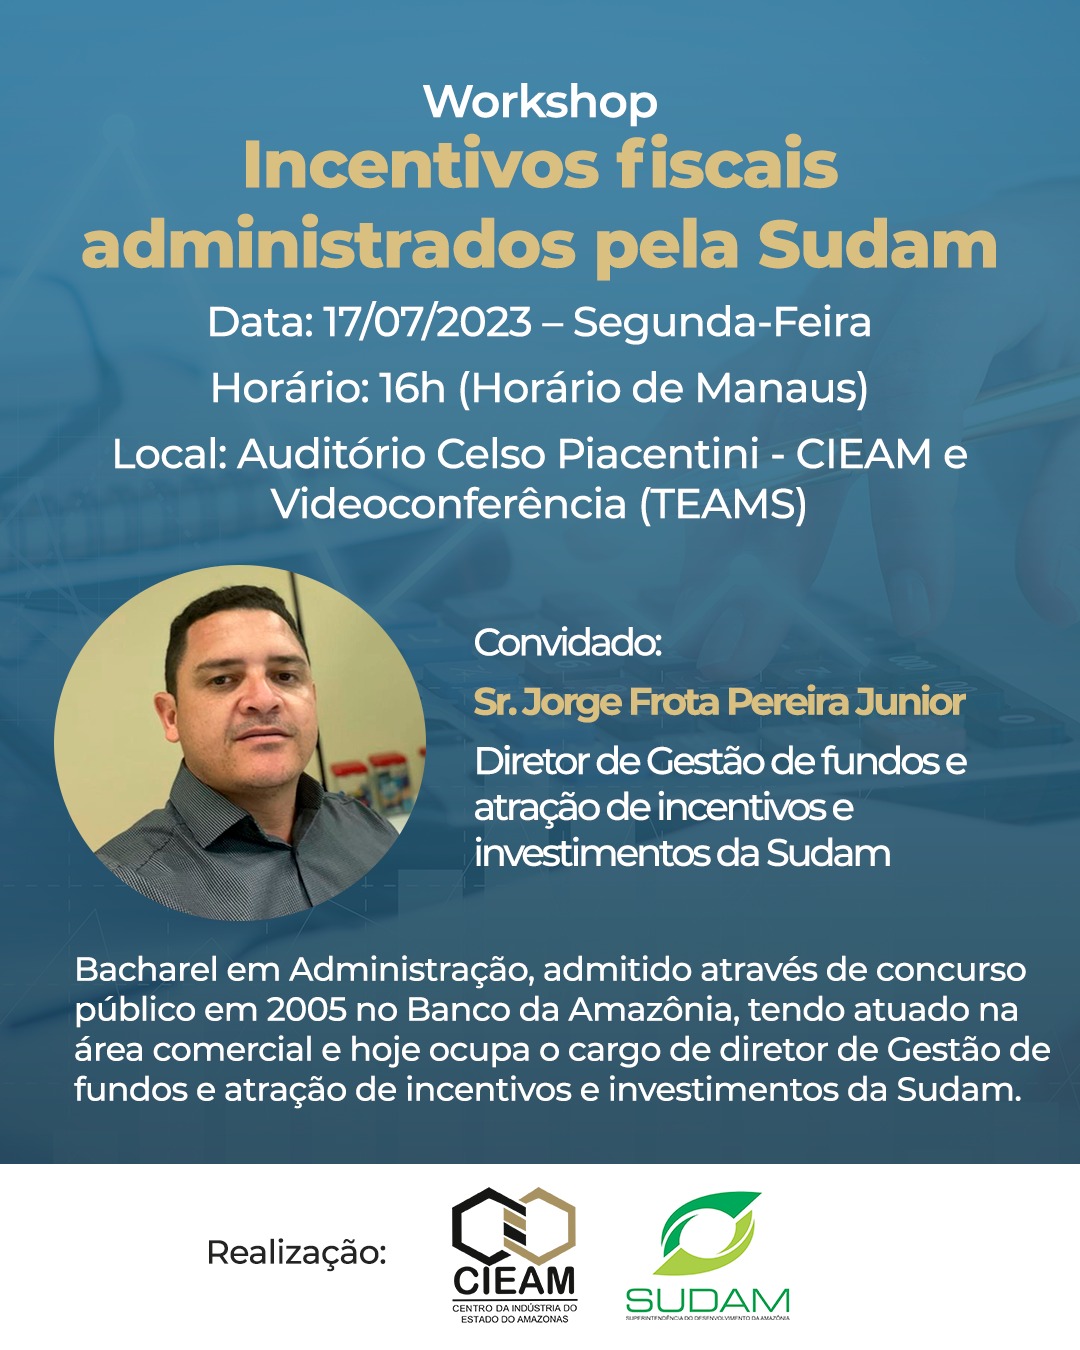 Workshop incentivos fiscais administrados pela SUDAM - 17/07 ás 16h - Presencial e Videoconferência